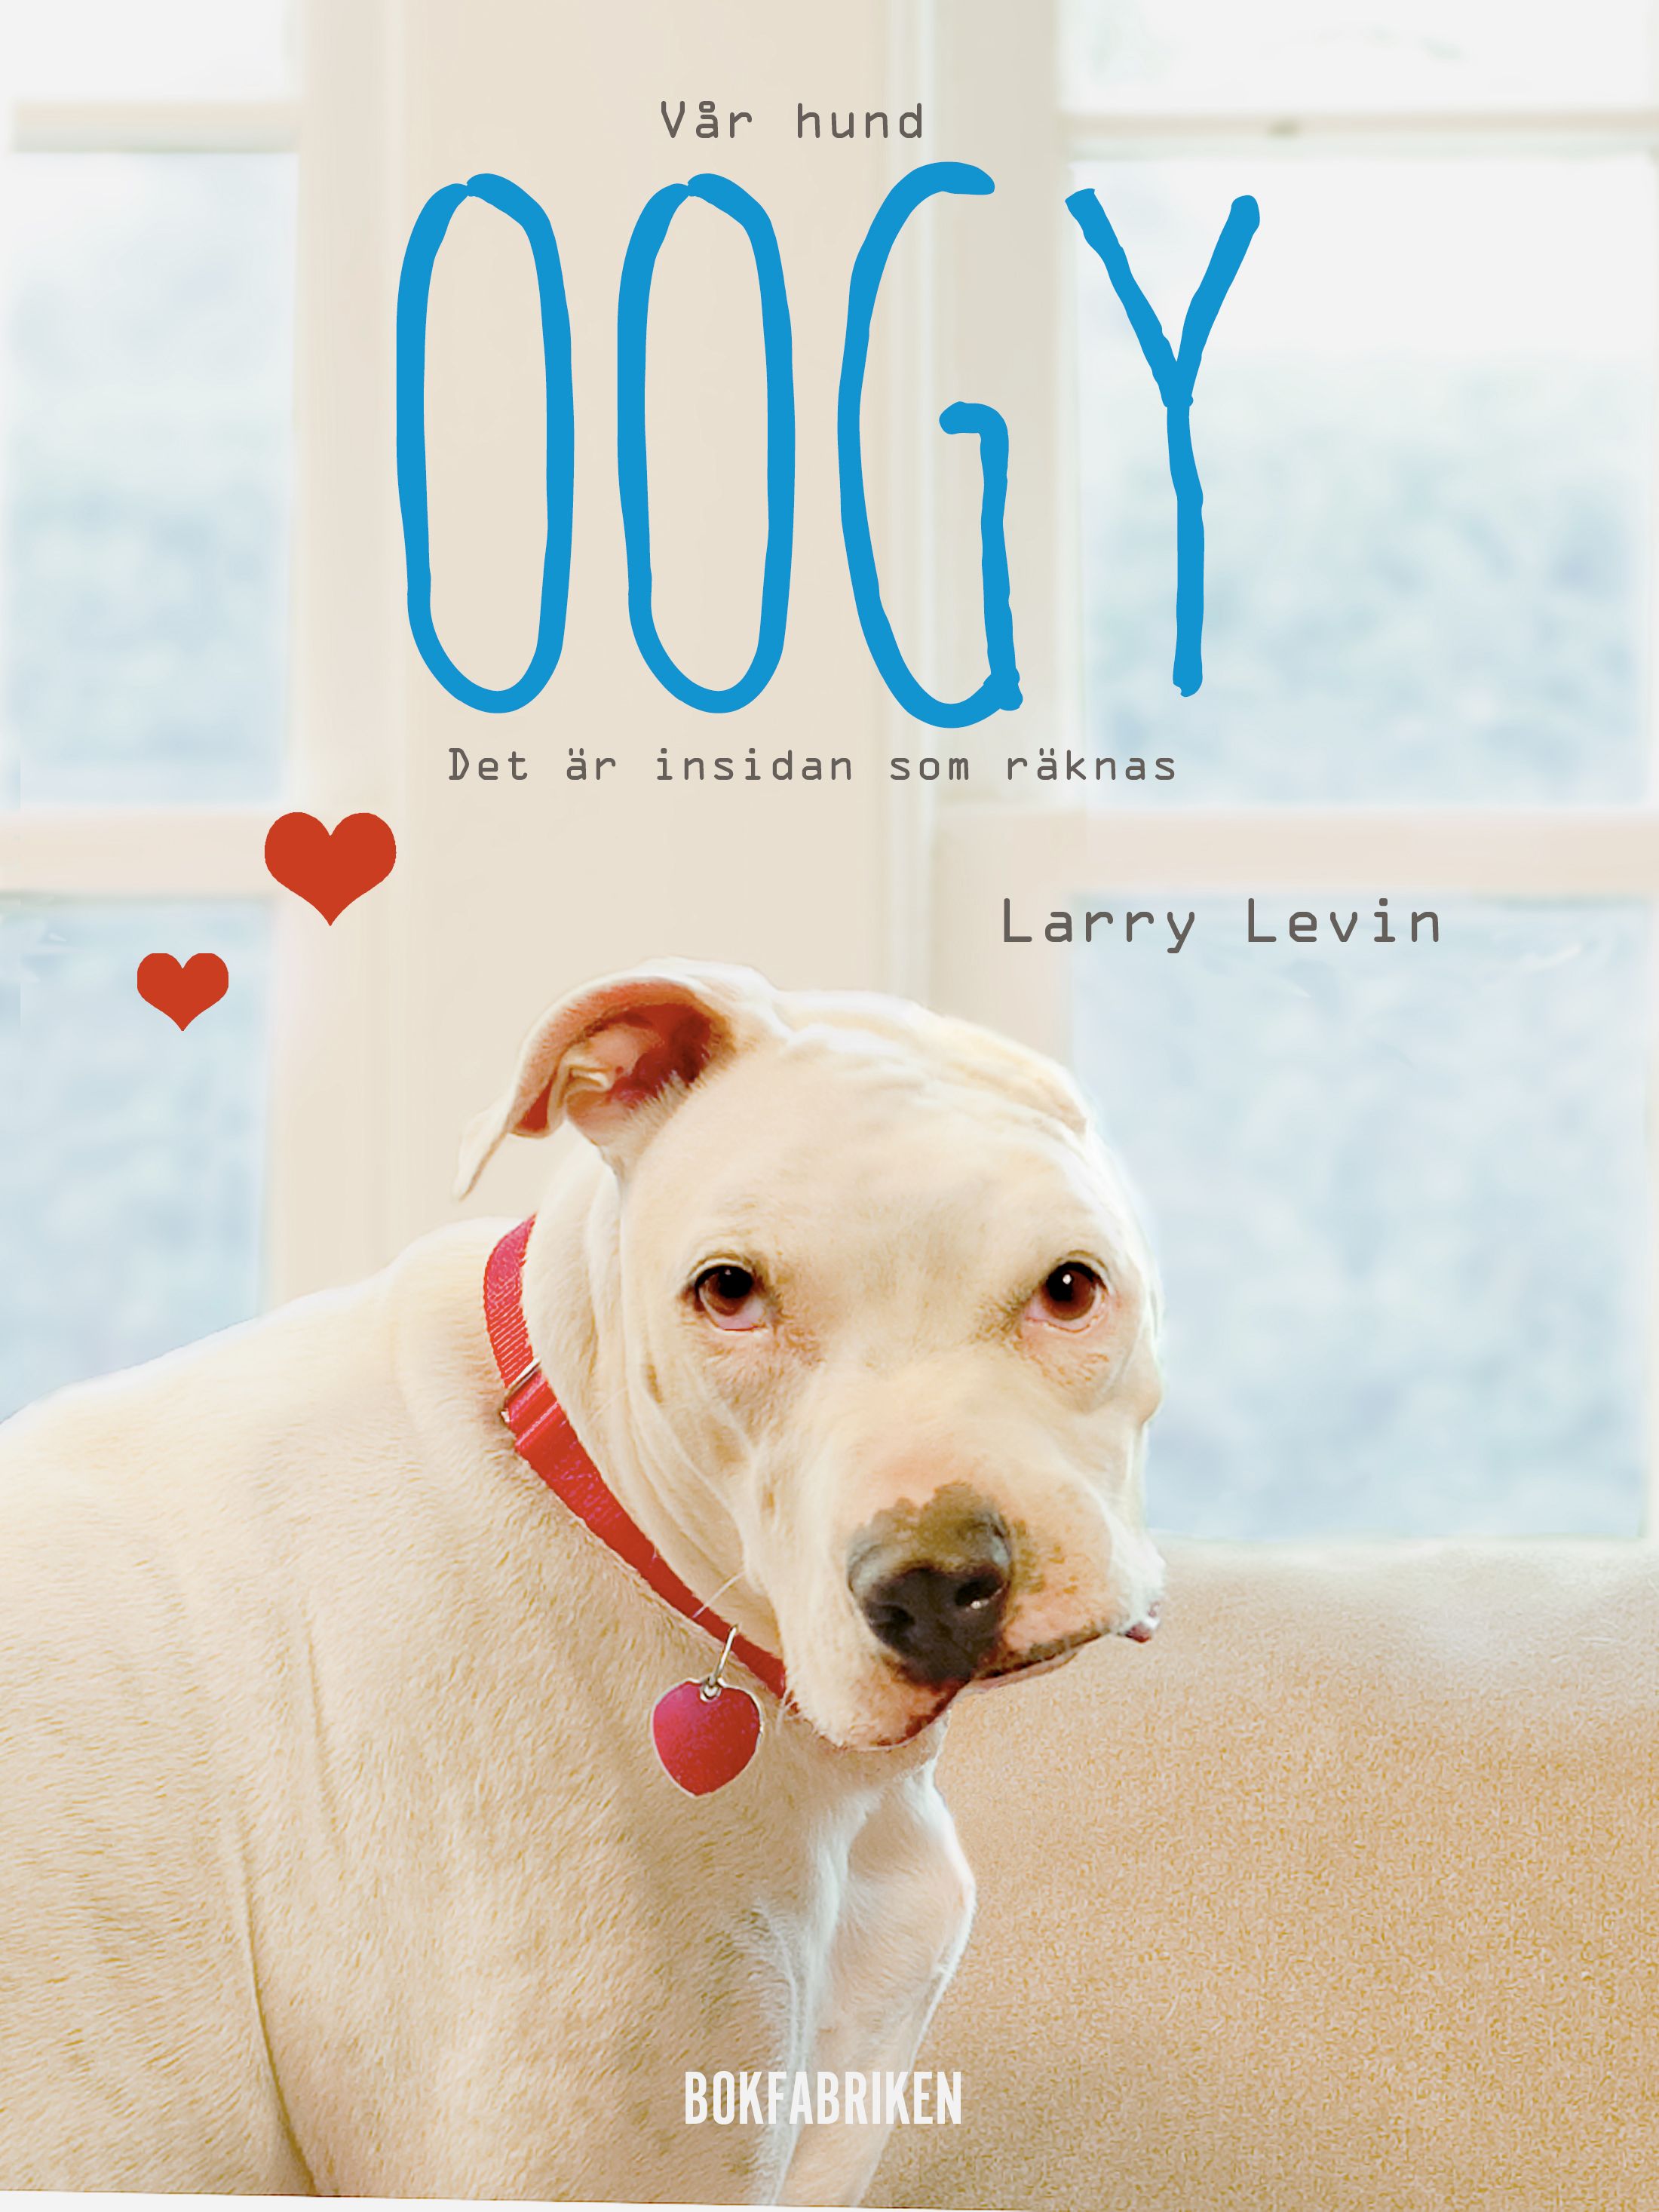 Vår hund Oogy : Det är insidan som räknas, e-bog af Larry Levin